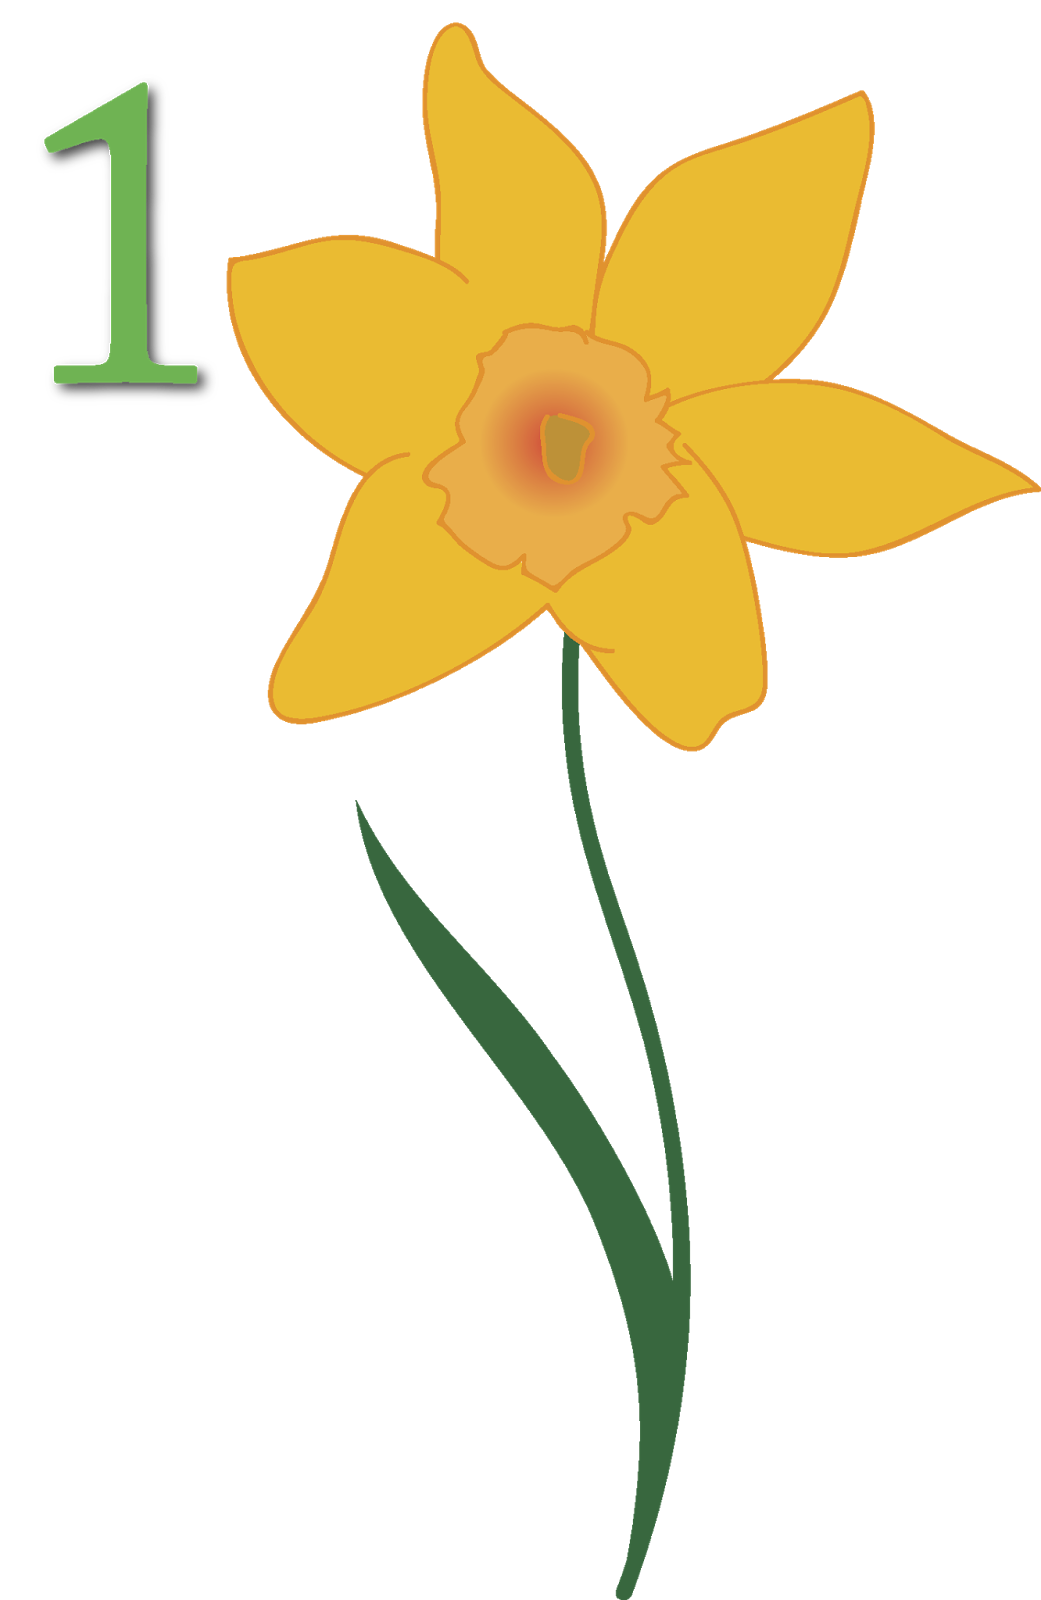 Daffodil april